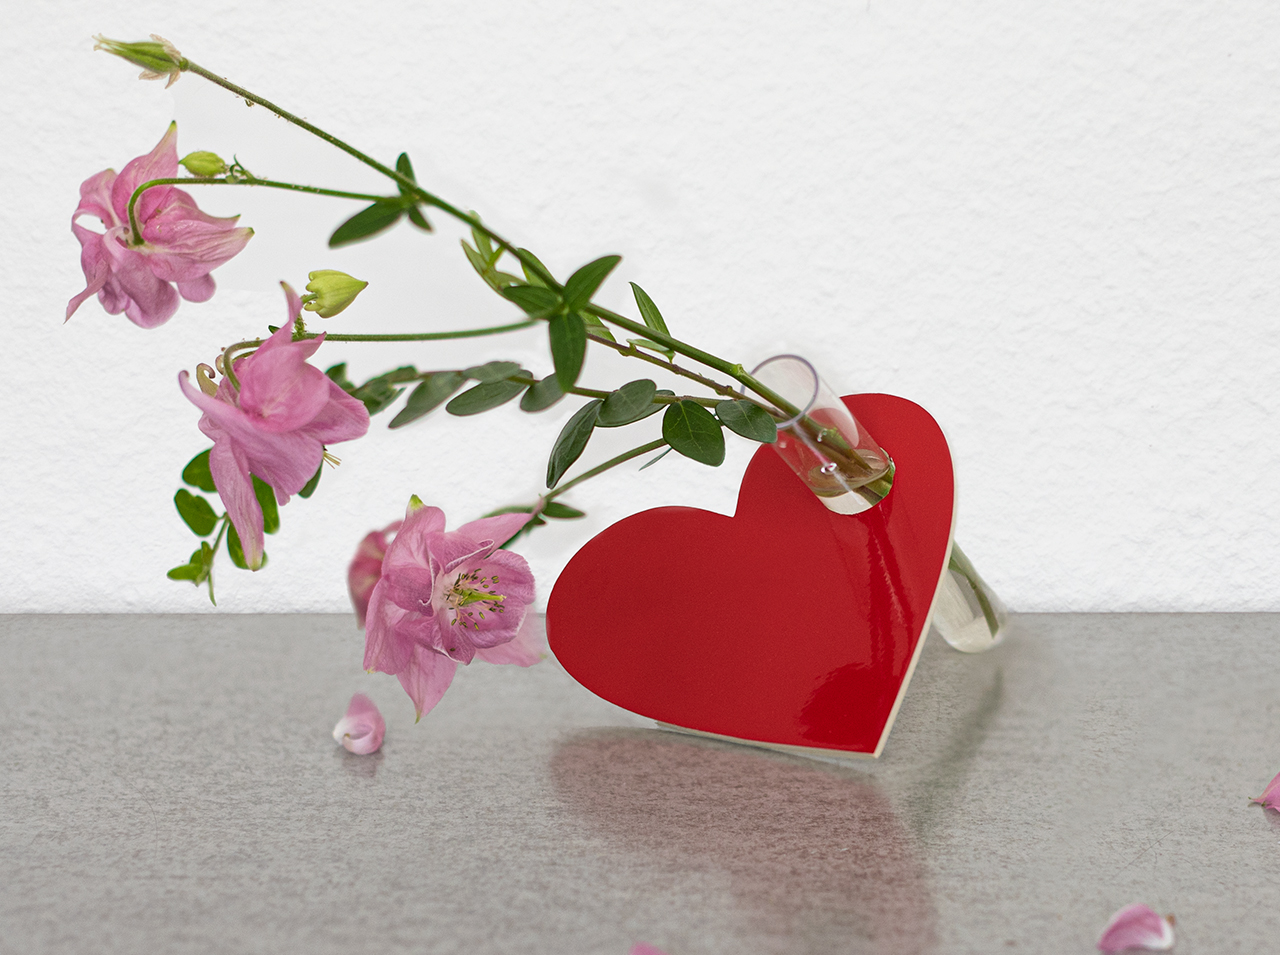 Herz aus Sperrholz mit Folie in Signalrot beklebt und integriertem kleinen Reagenzglas, das mit frischen Blumen dekoriert ist.